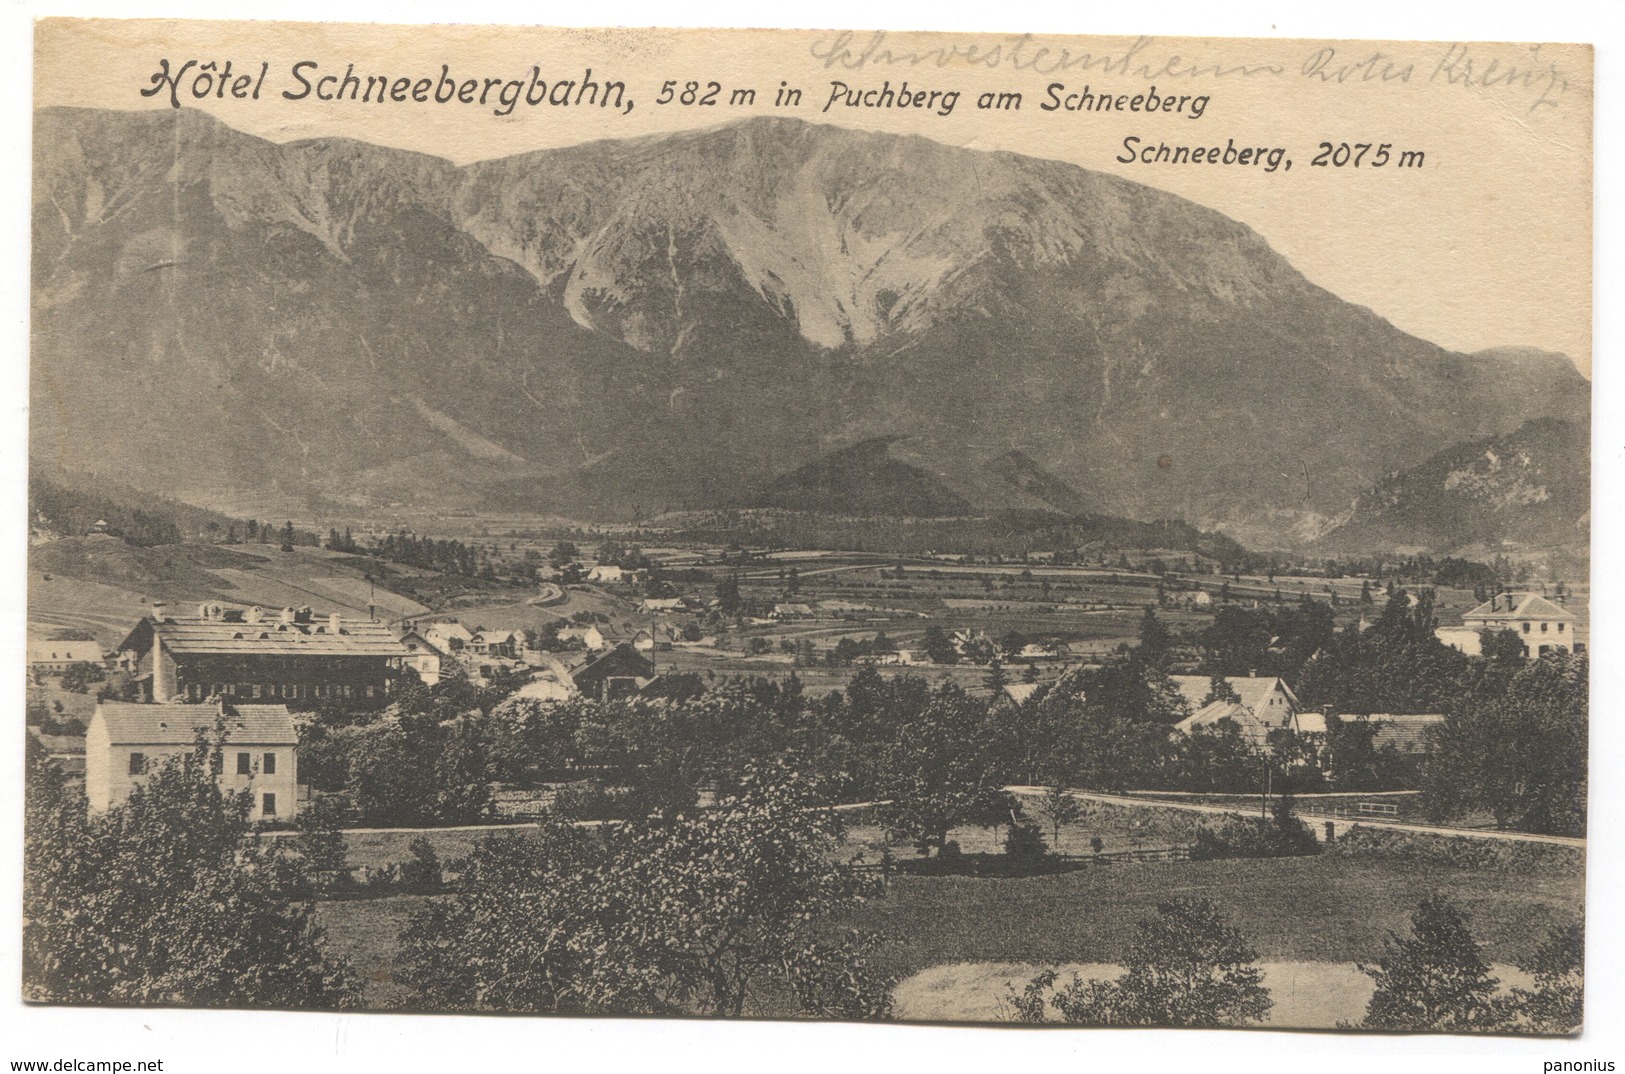 SCHNEEBERGBAHN HOTEL - AUSTRIA, PUCHBERG In SCHNEEBERG, OLD PC - Schneeberggebiet